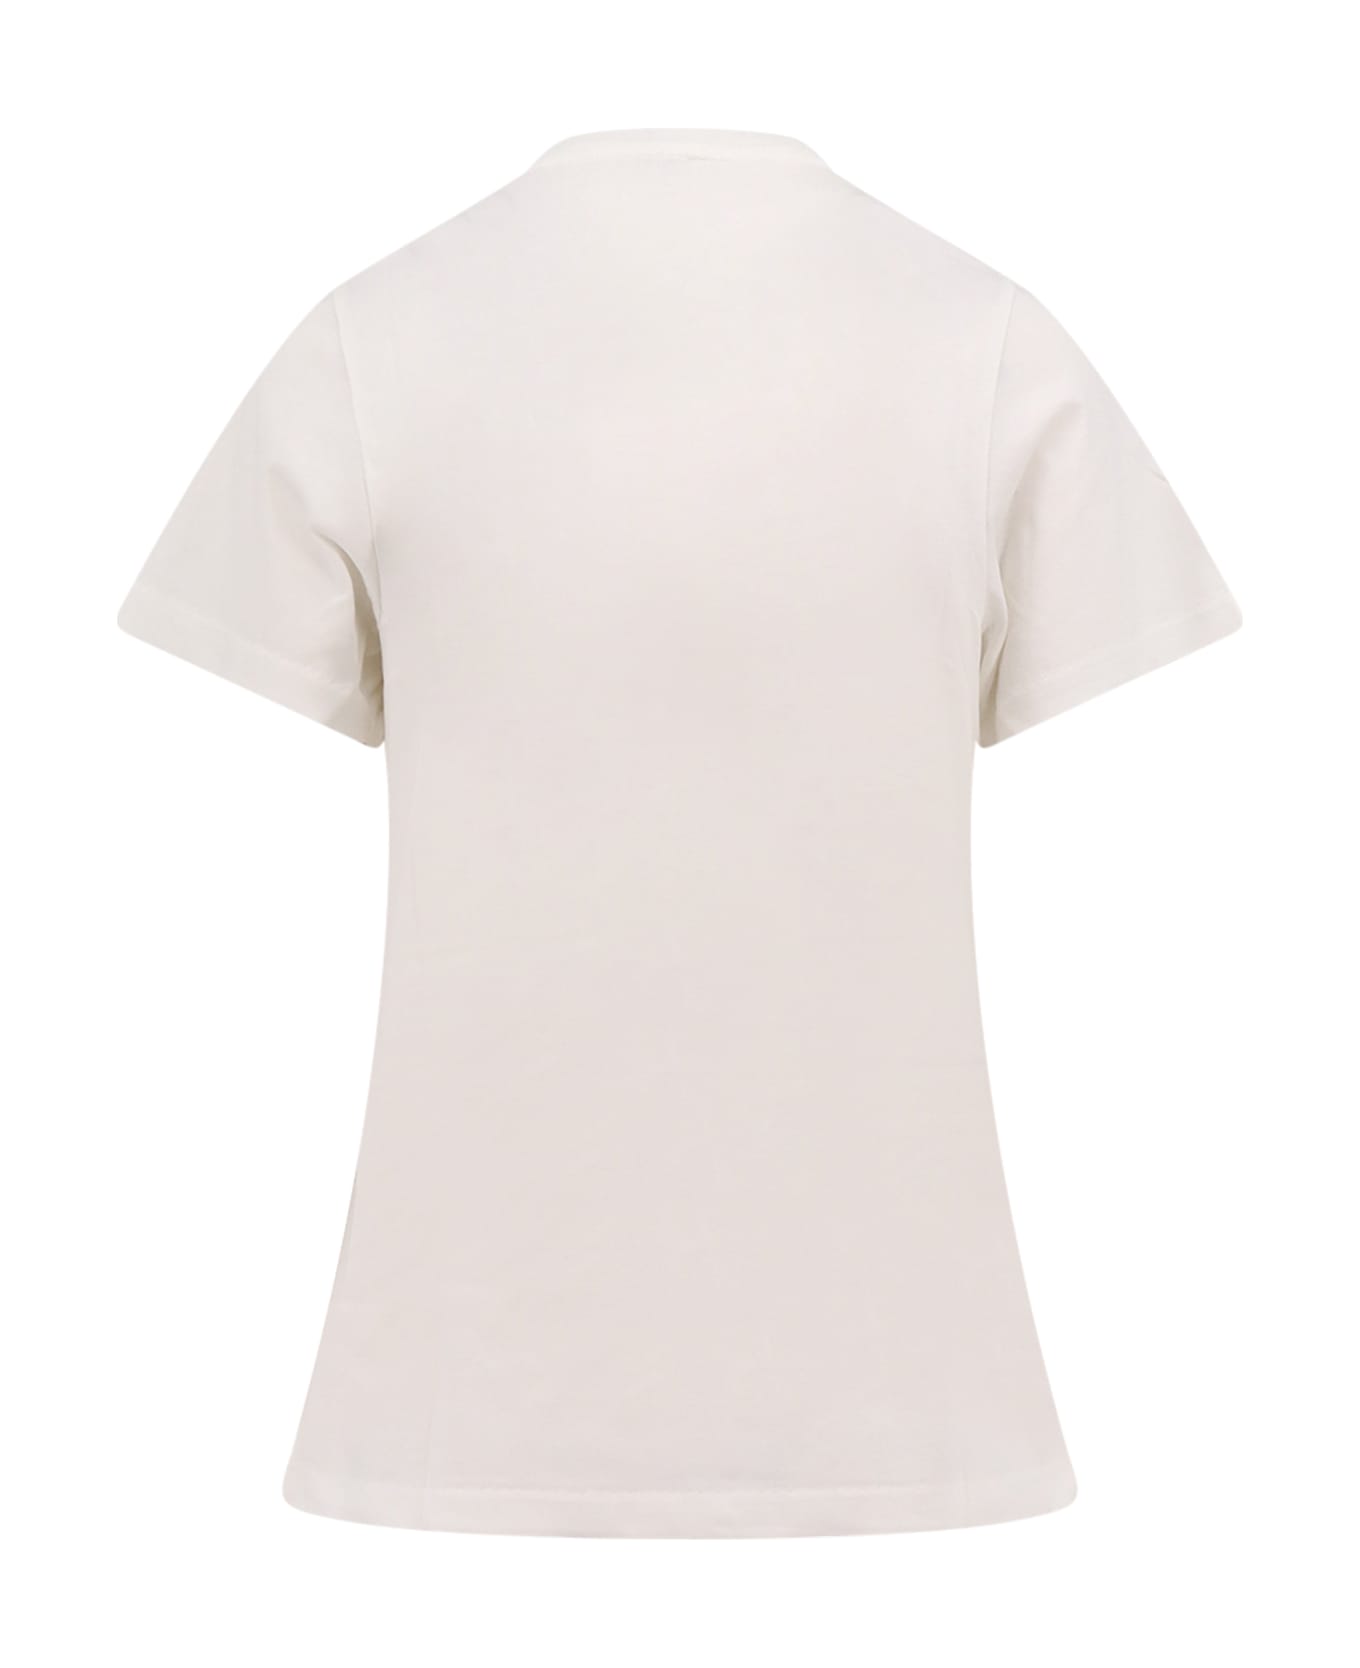 Totême T-shirt - White